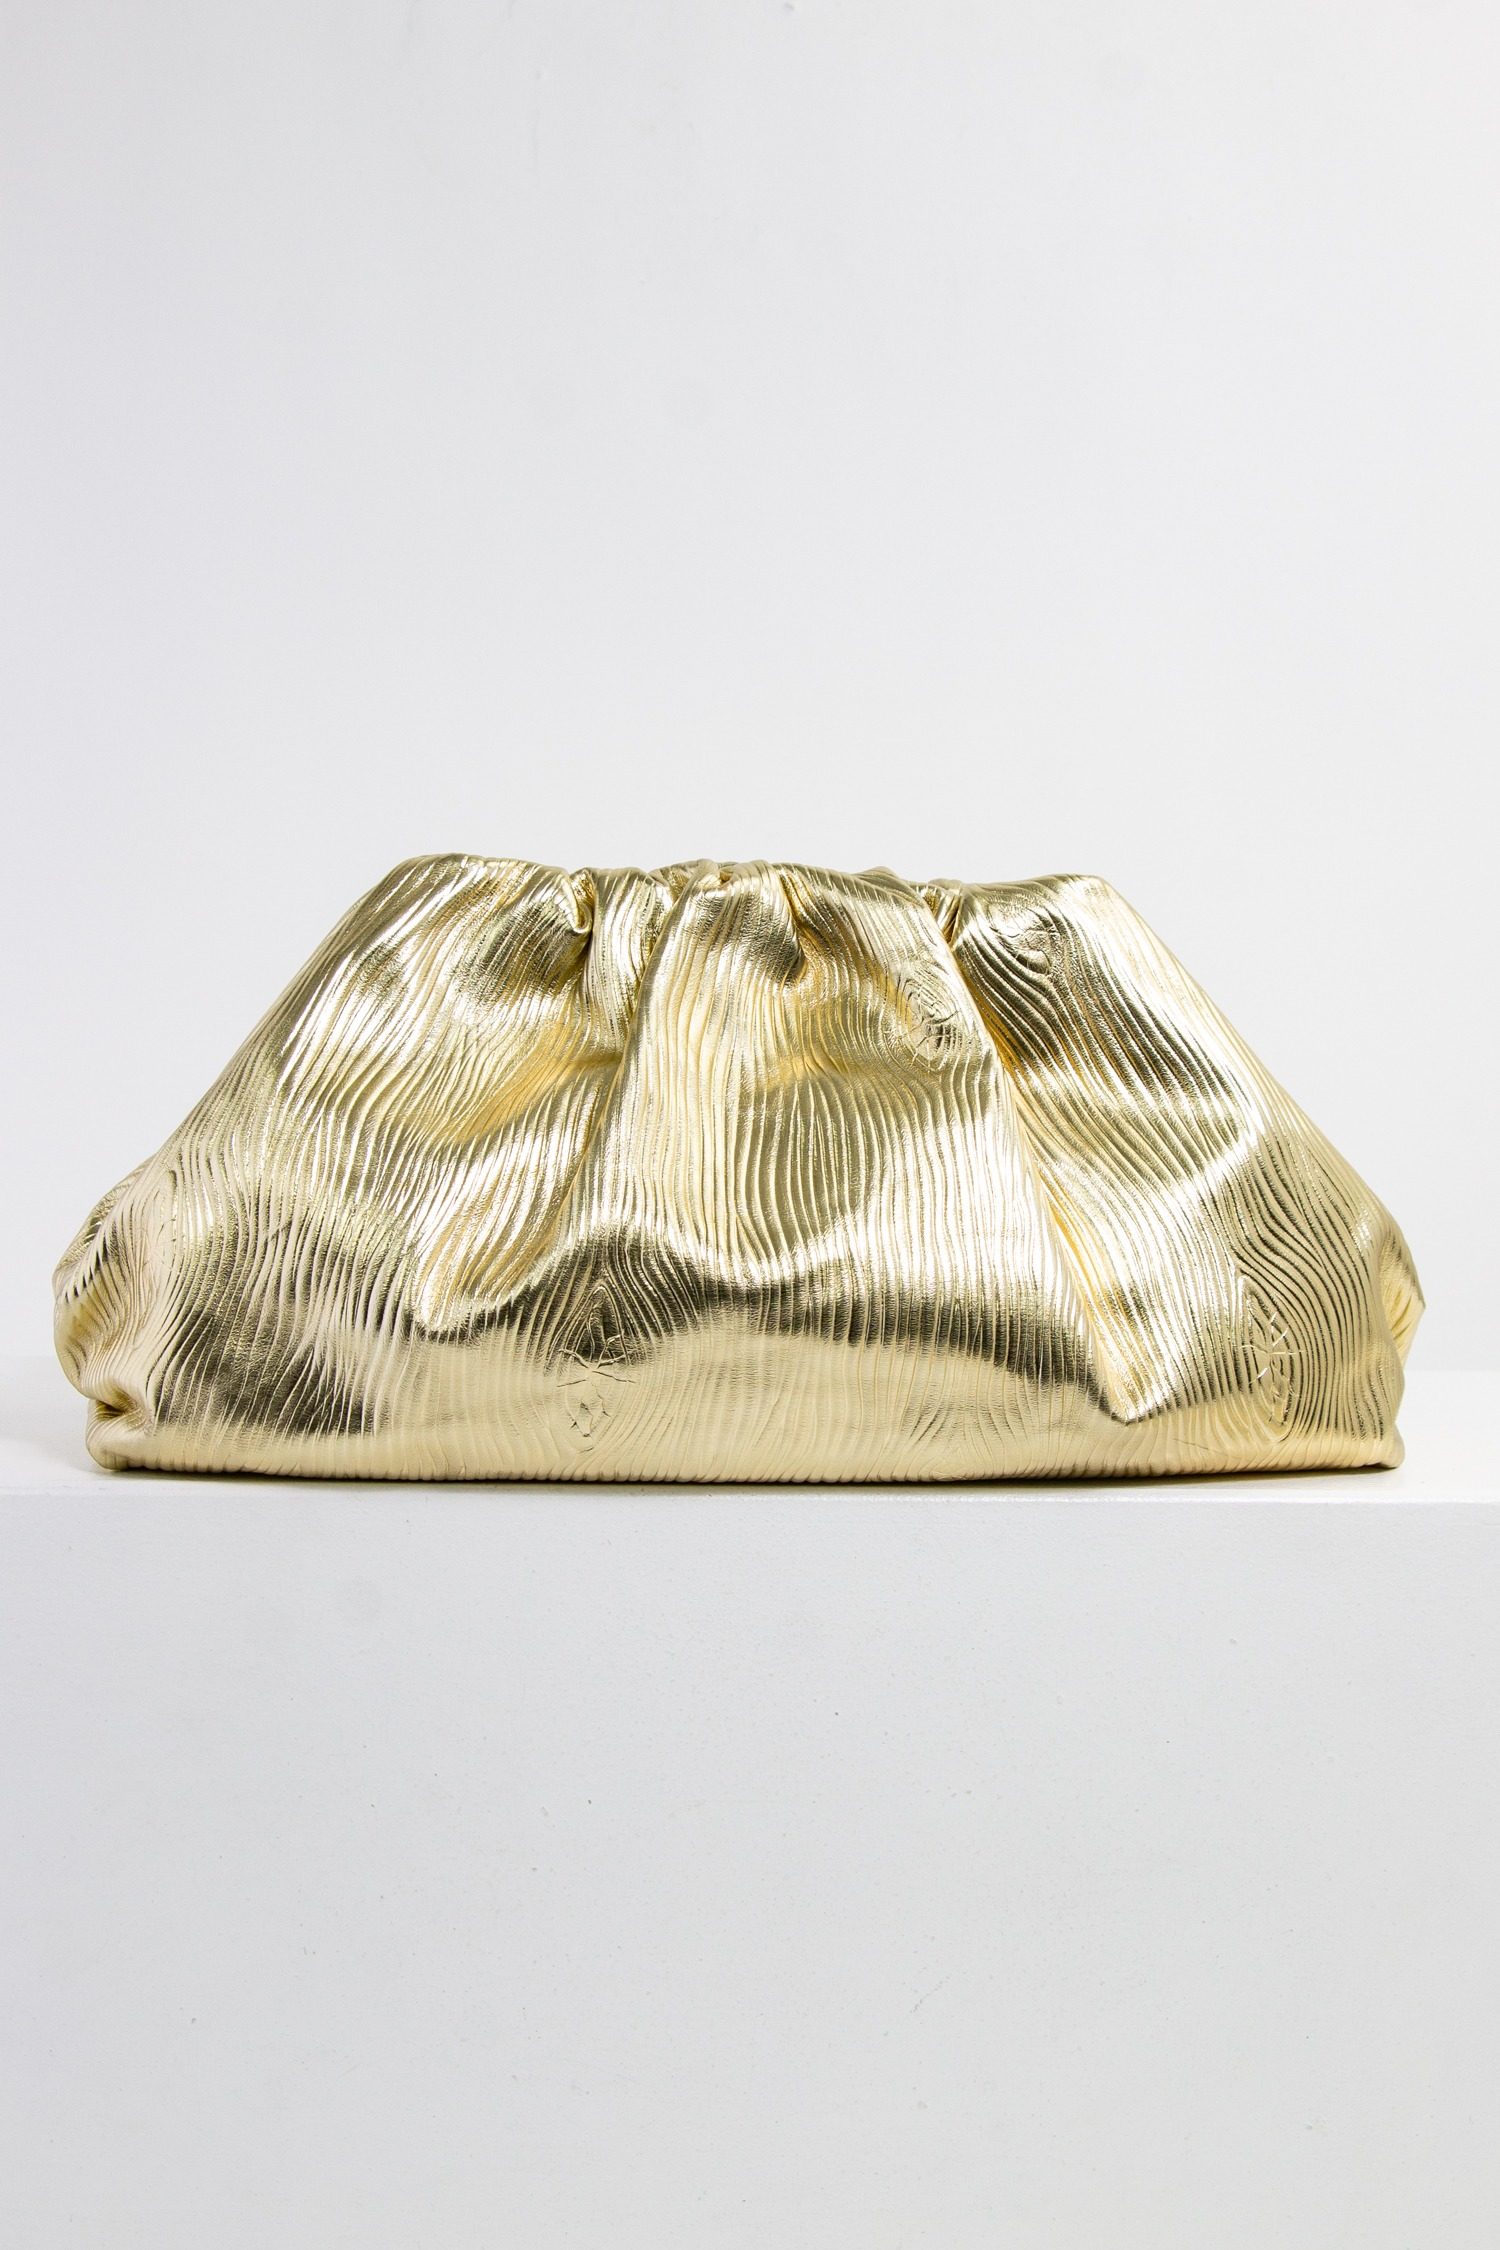 Bottega Veneta “Pouch” Clutch in gold mit geprägter Holz-Struktur